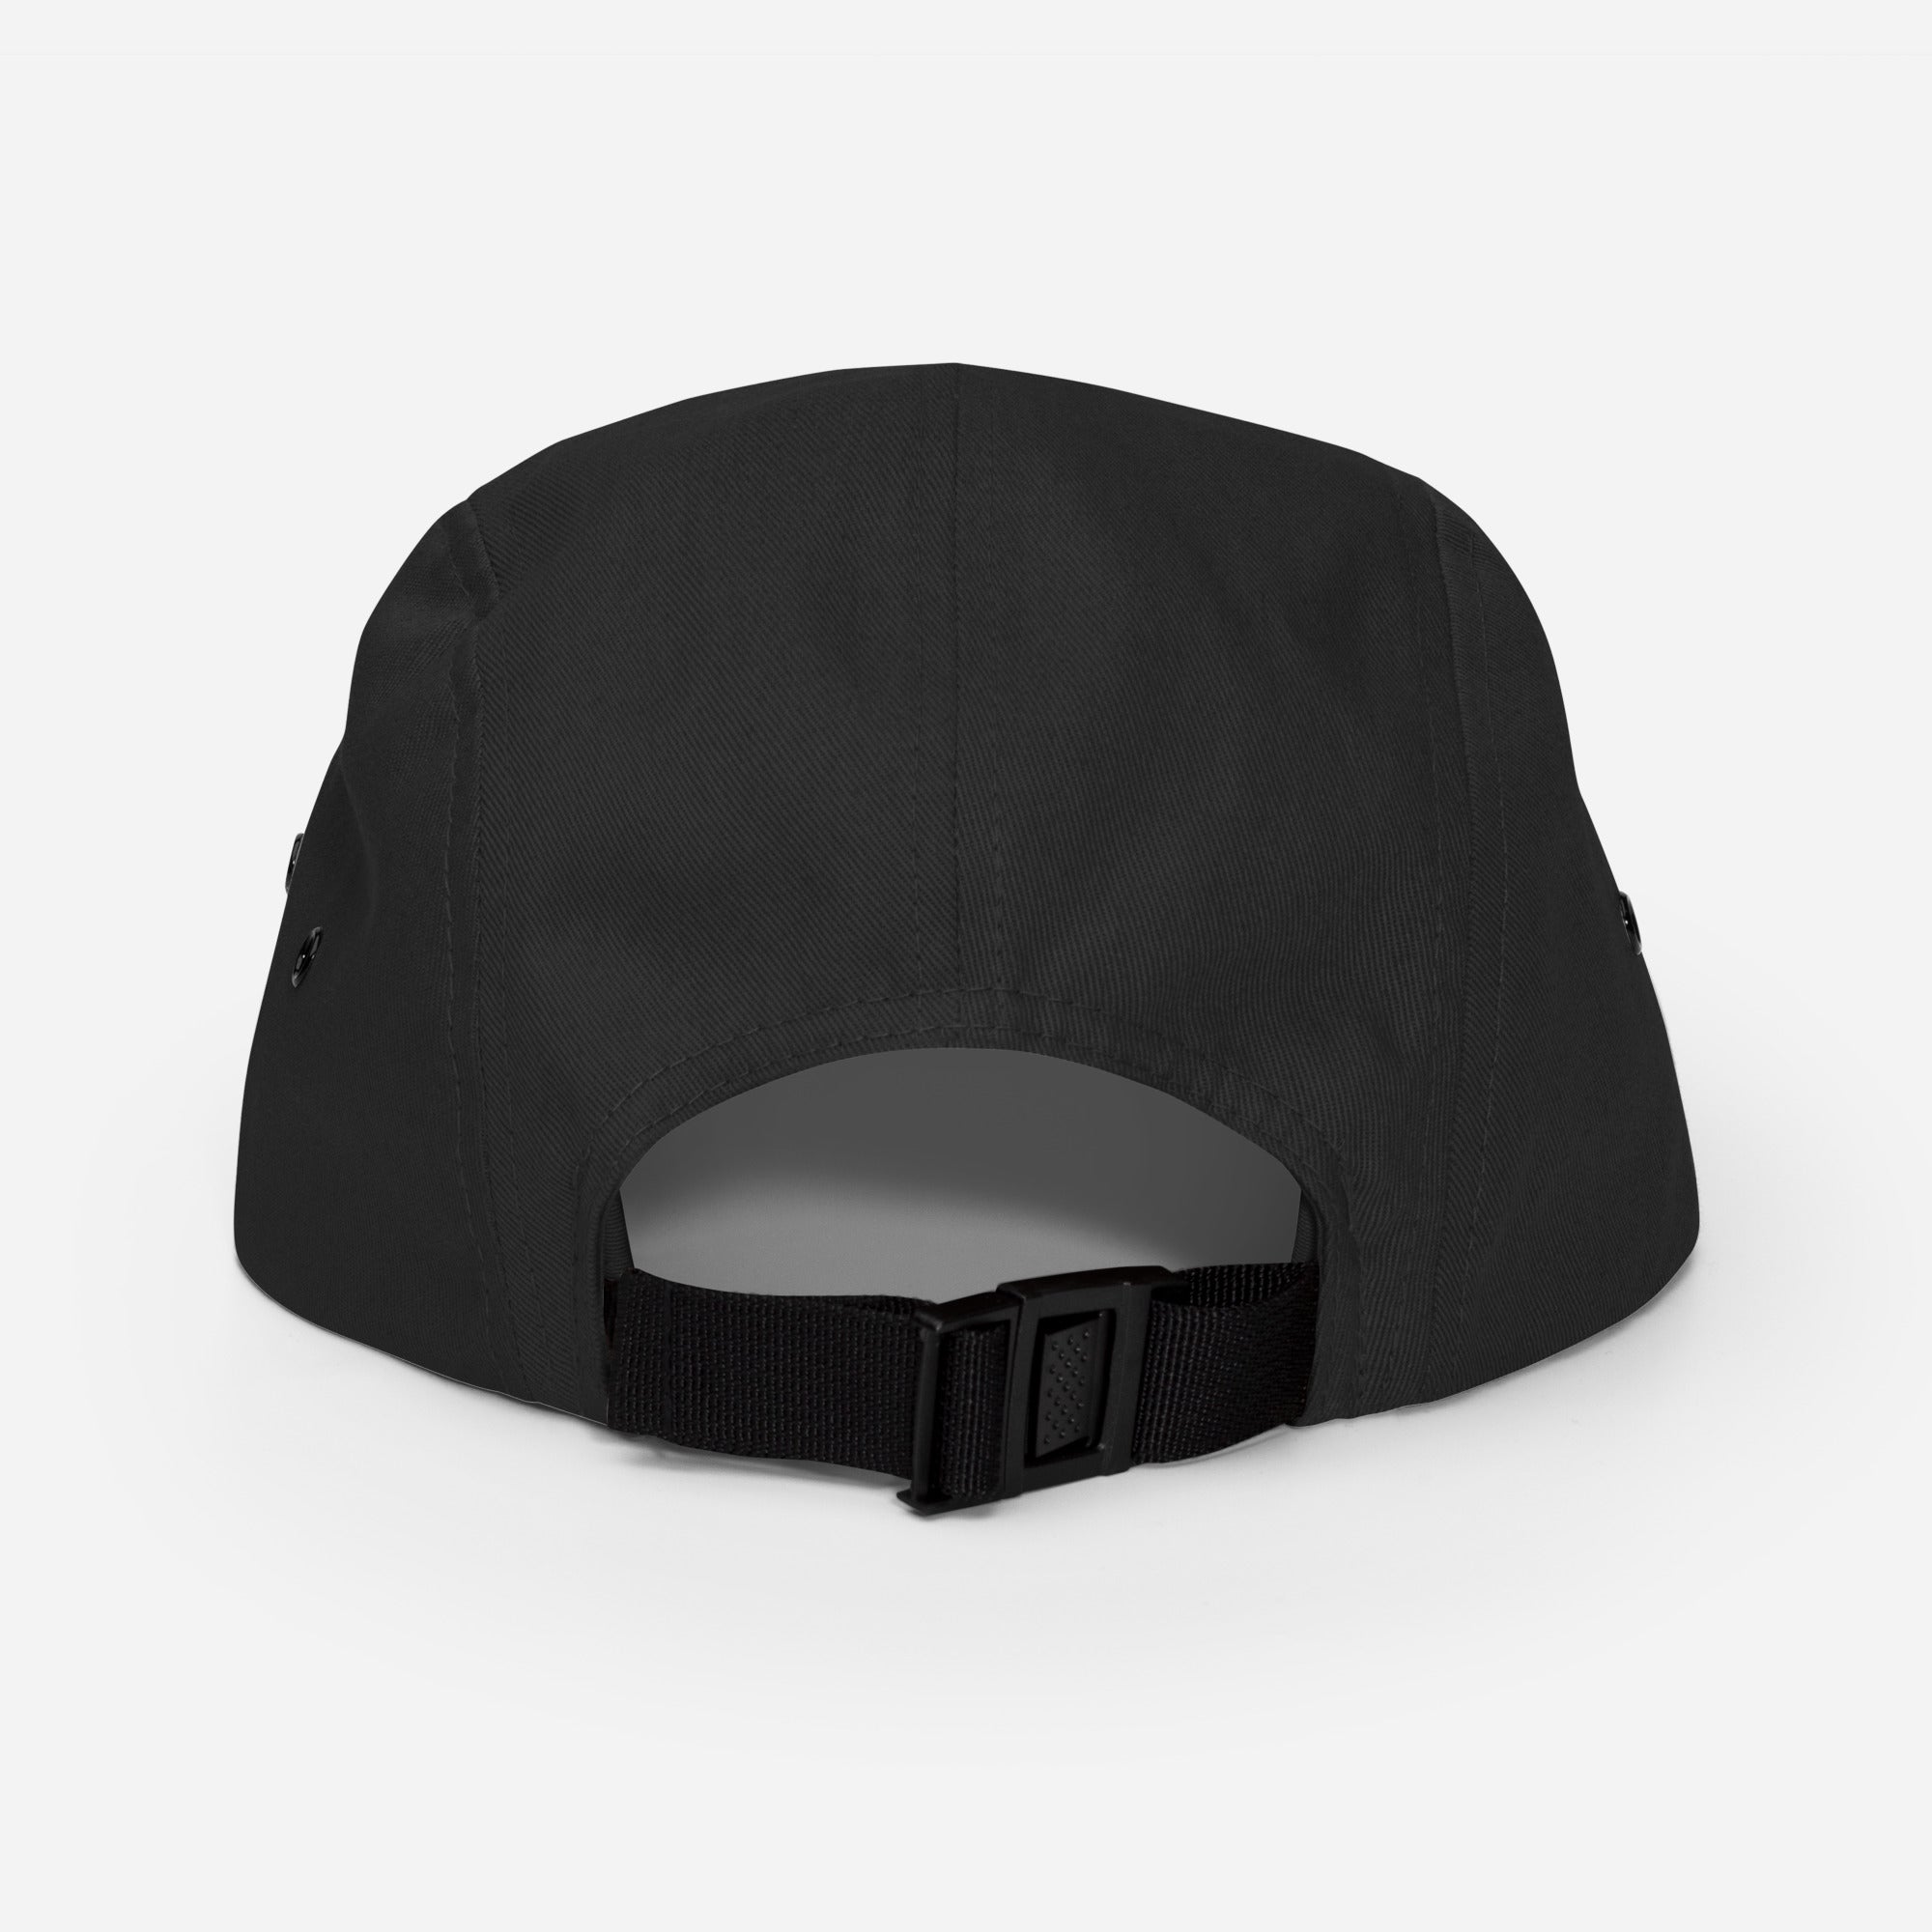 Graceville (Five Panel Black Hat)